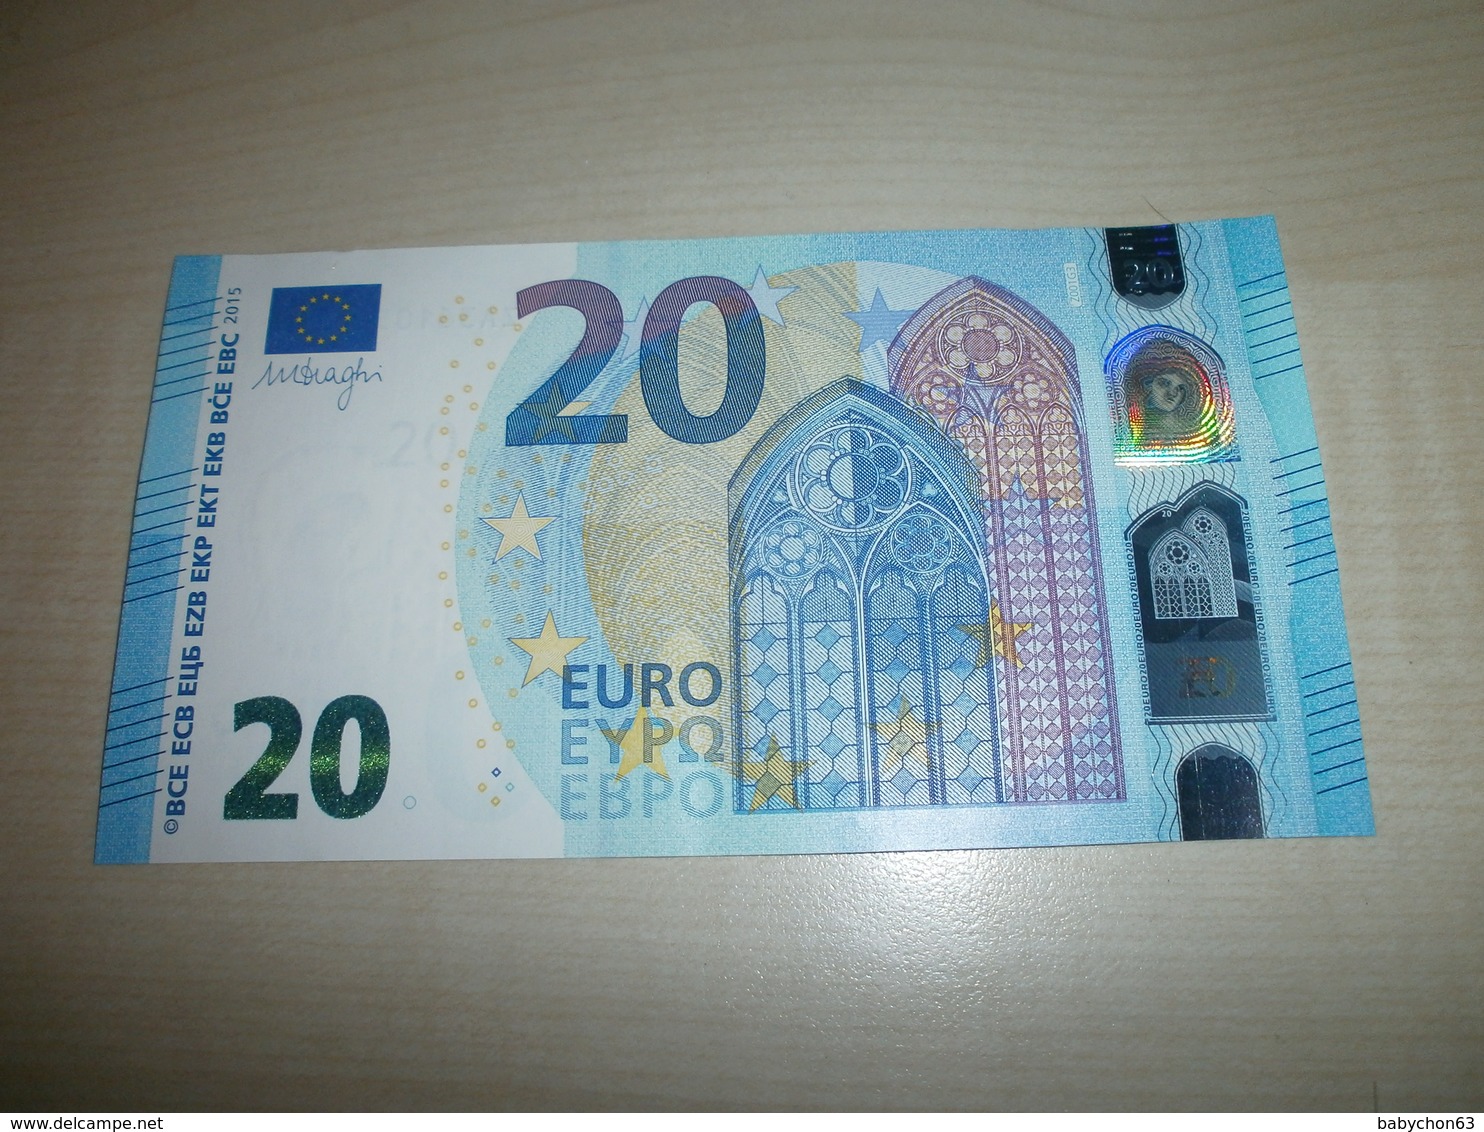 20 EUROS (Z Z001 G3) - 20 Euro